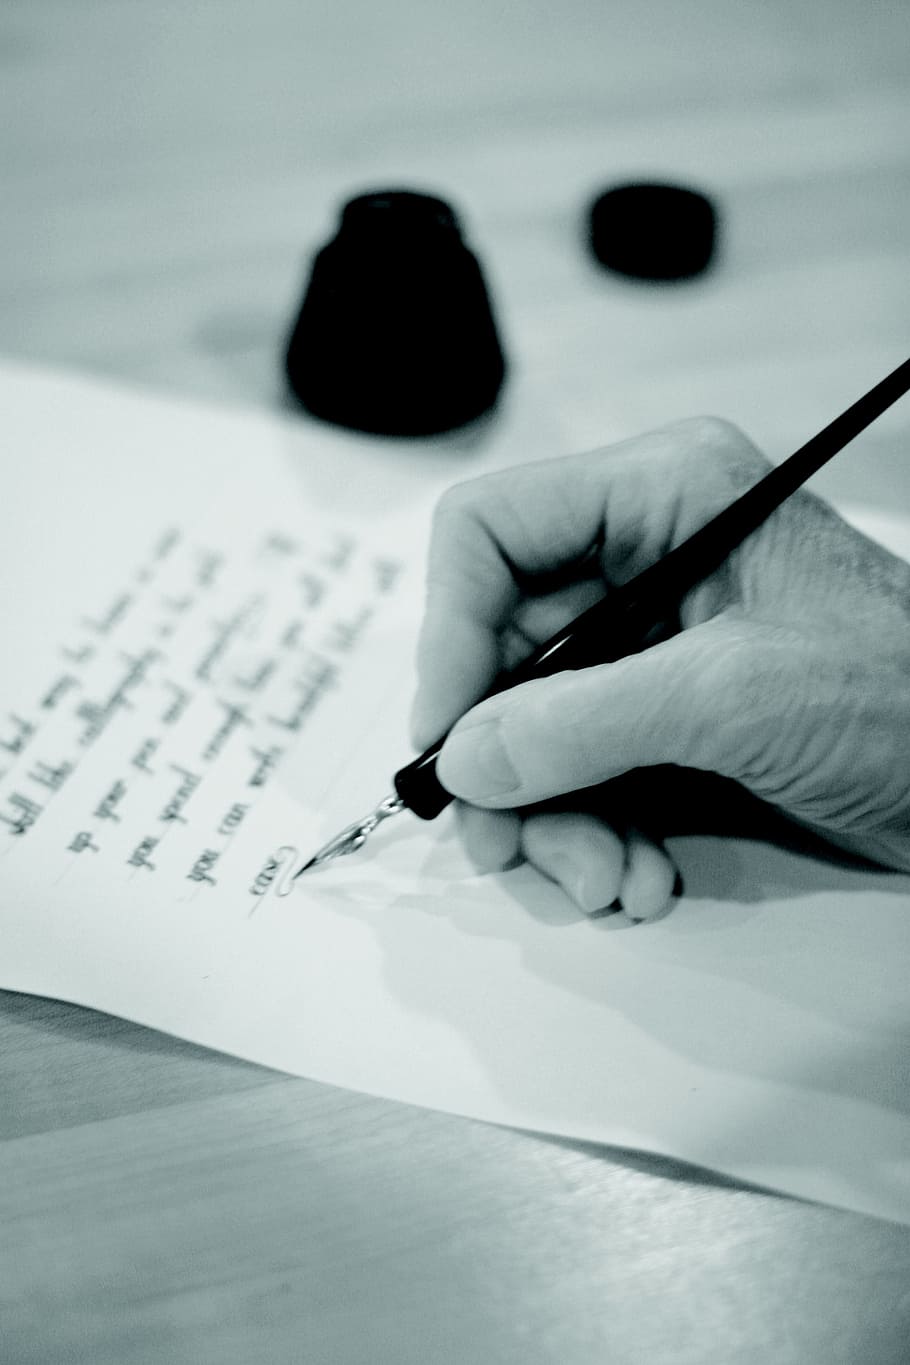 pessoa, usando, caneta de tinta, escrita, artística, caligrafia, tinta, texto, tipo, fonte